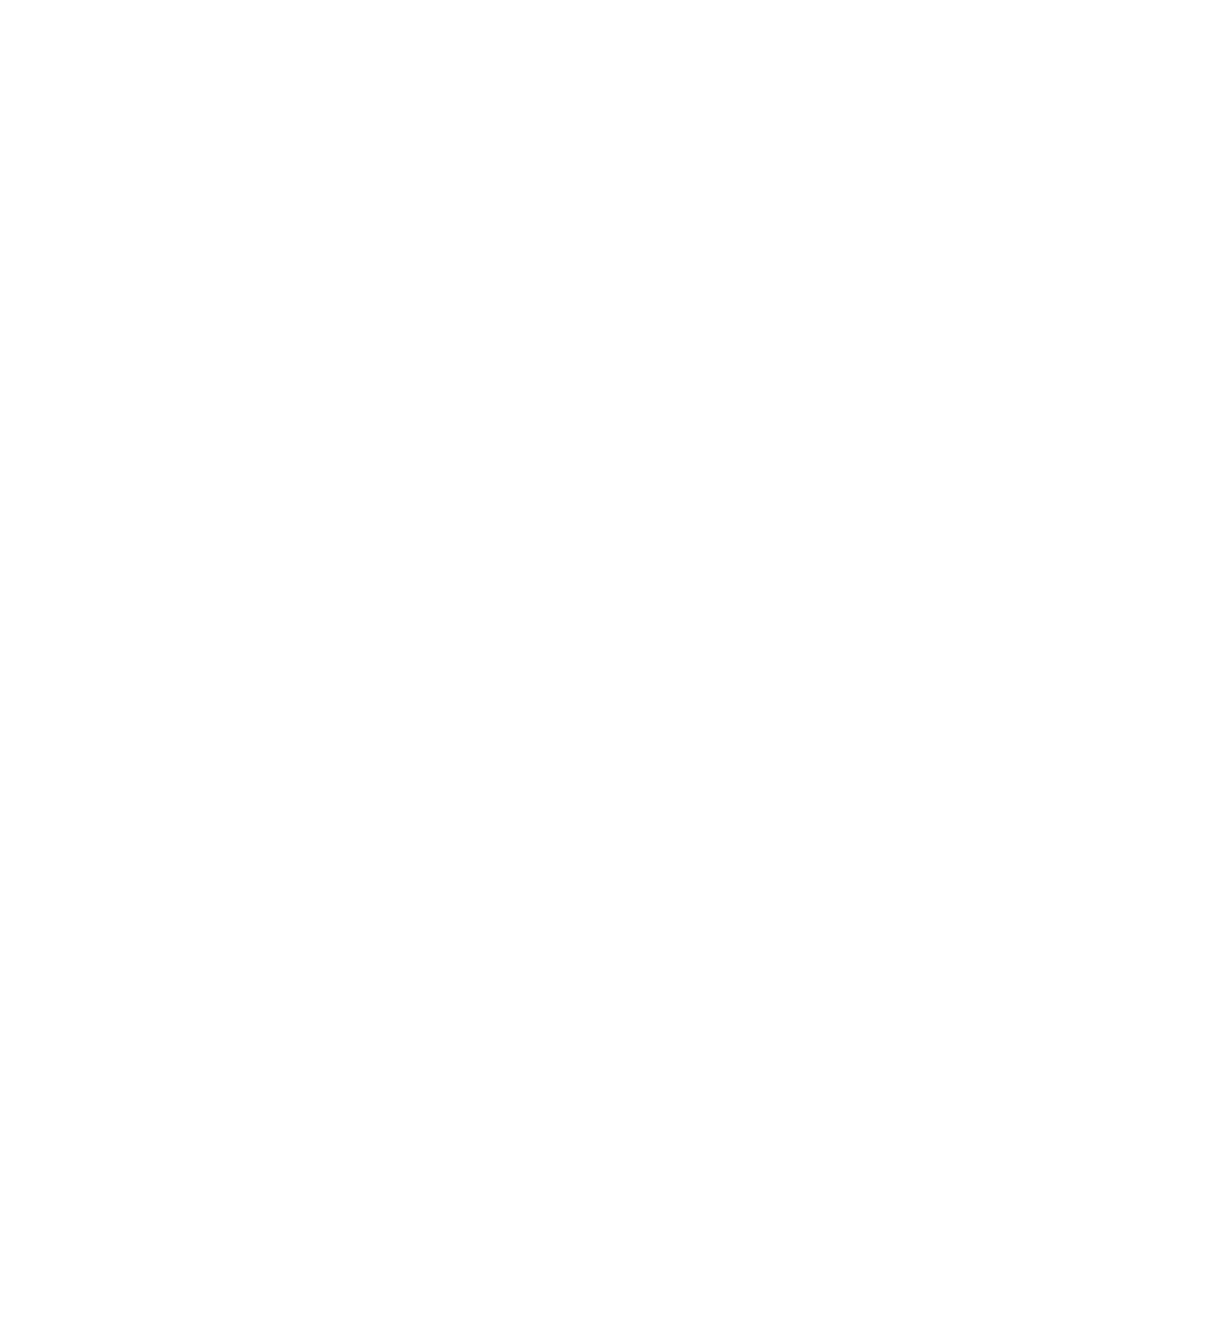 Greystar Accessibility Statement